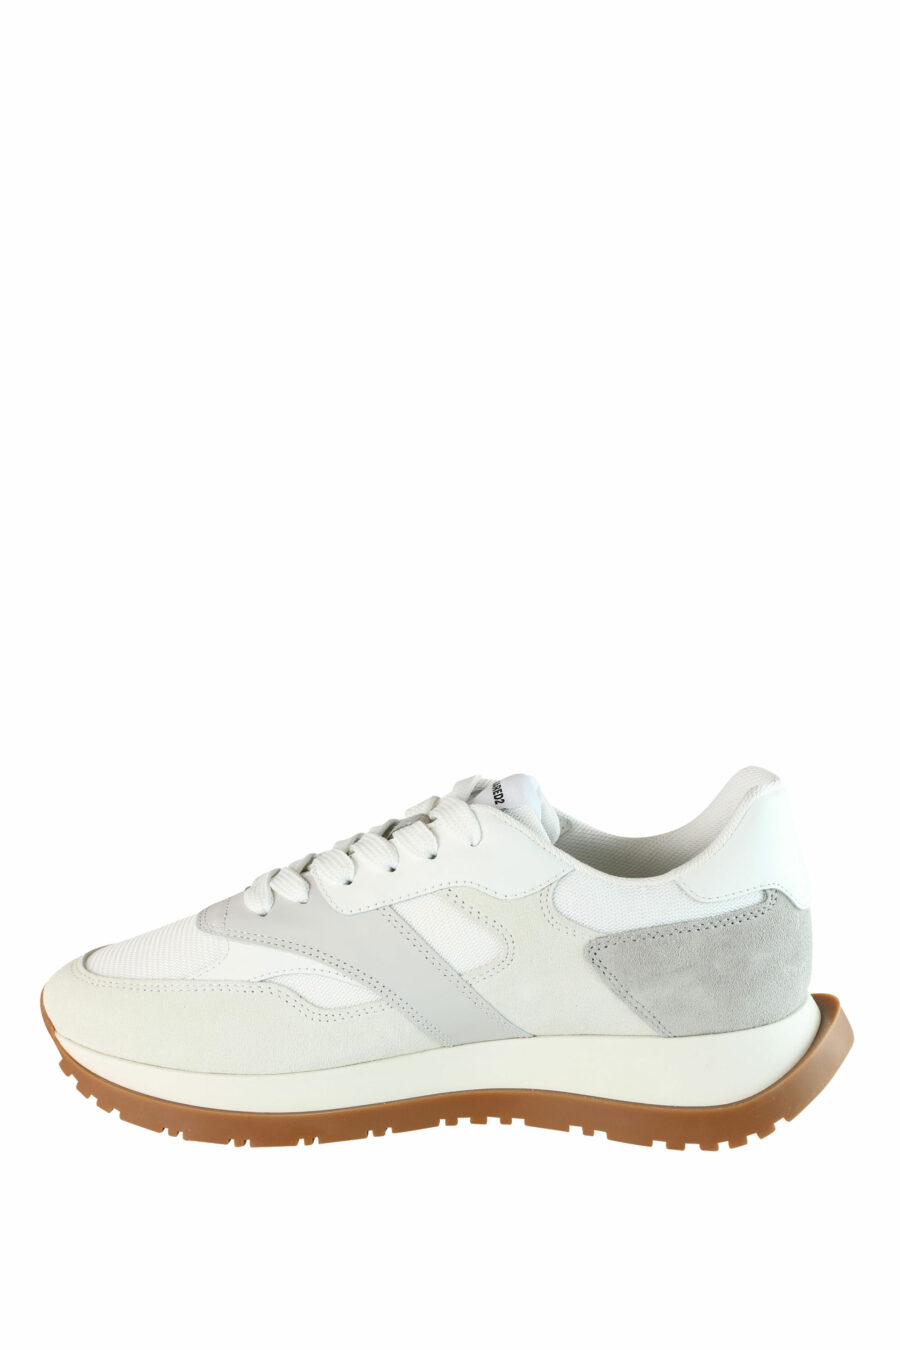 Zapatillas blancas "running" con detalles grises y beige - IMG 1399